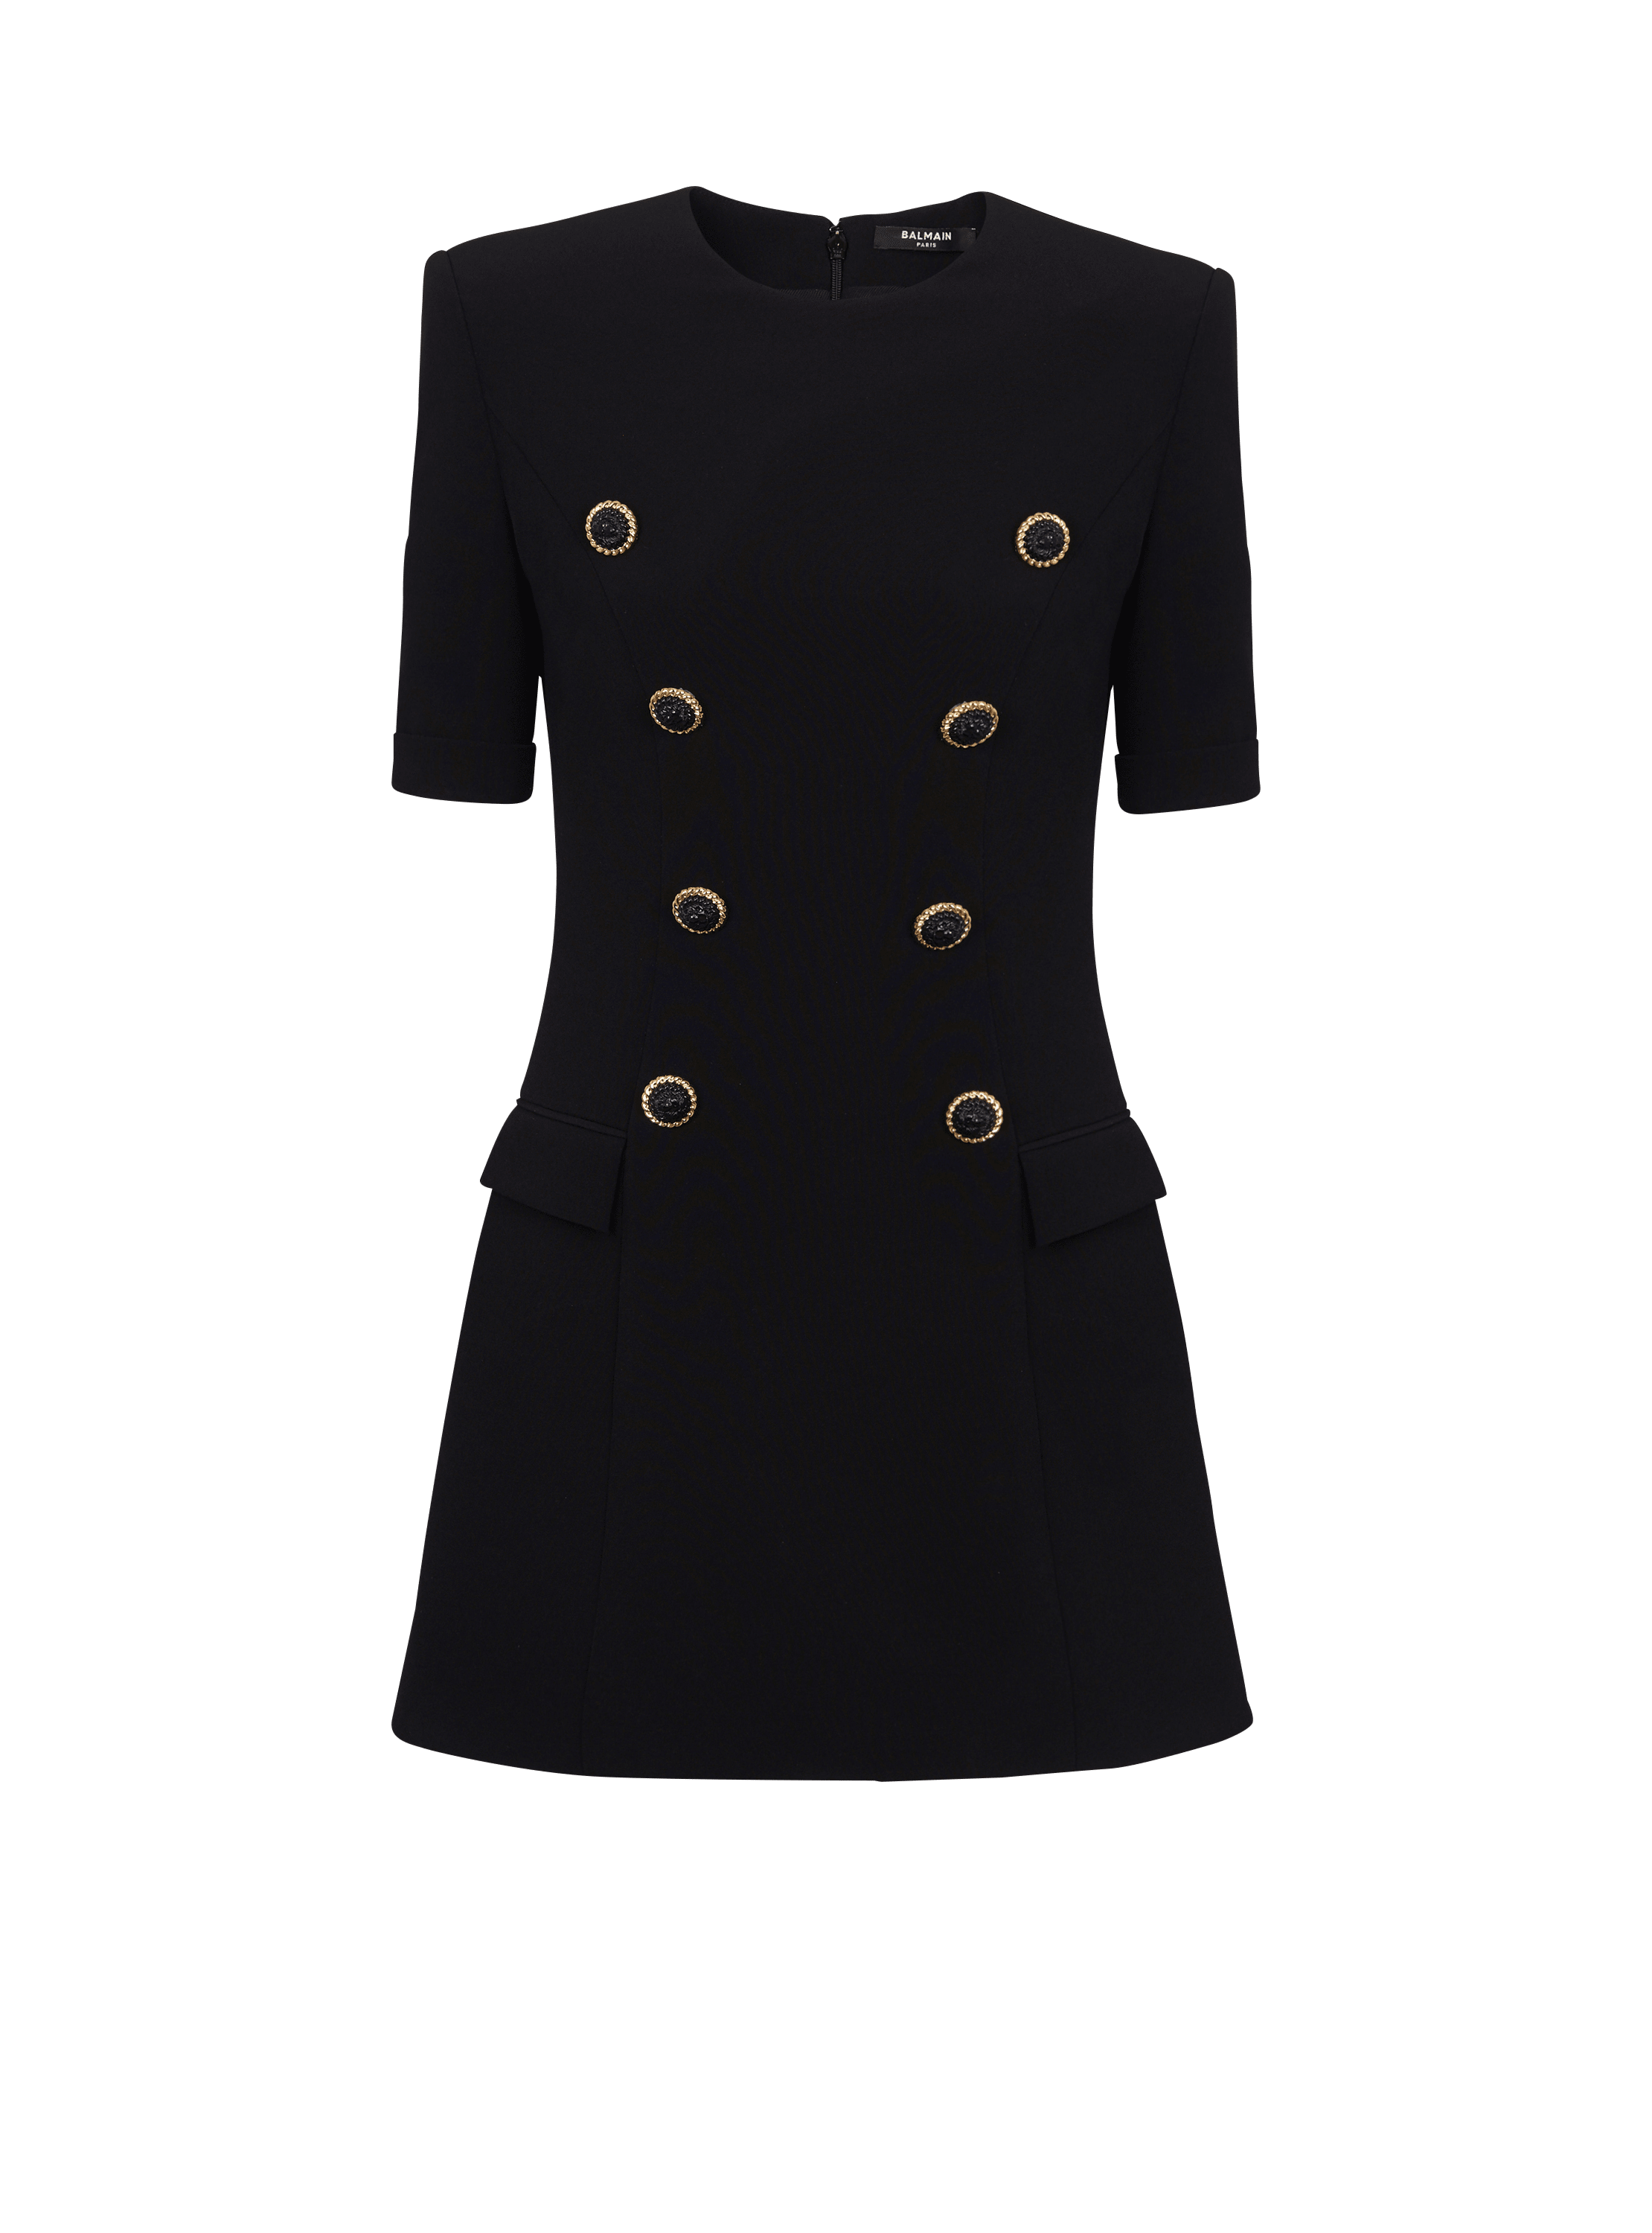 8-button crepe dress